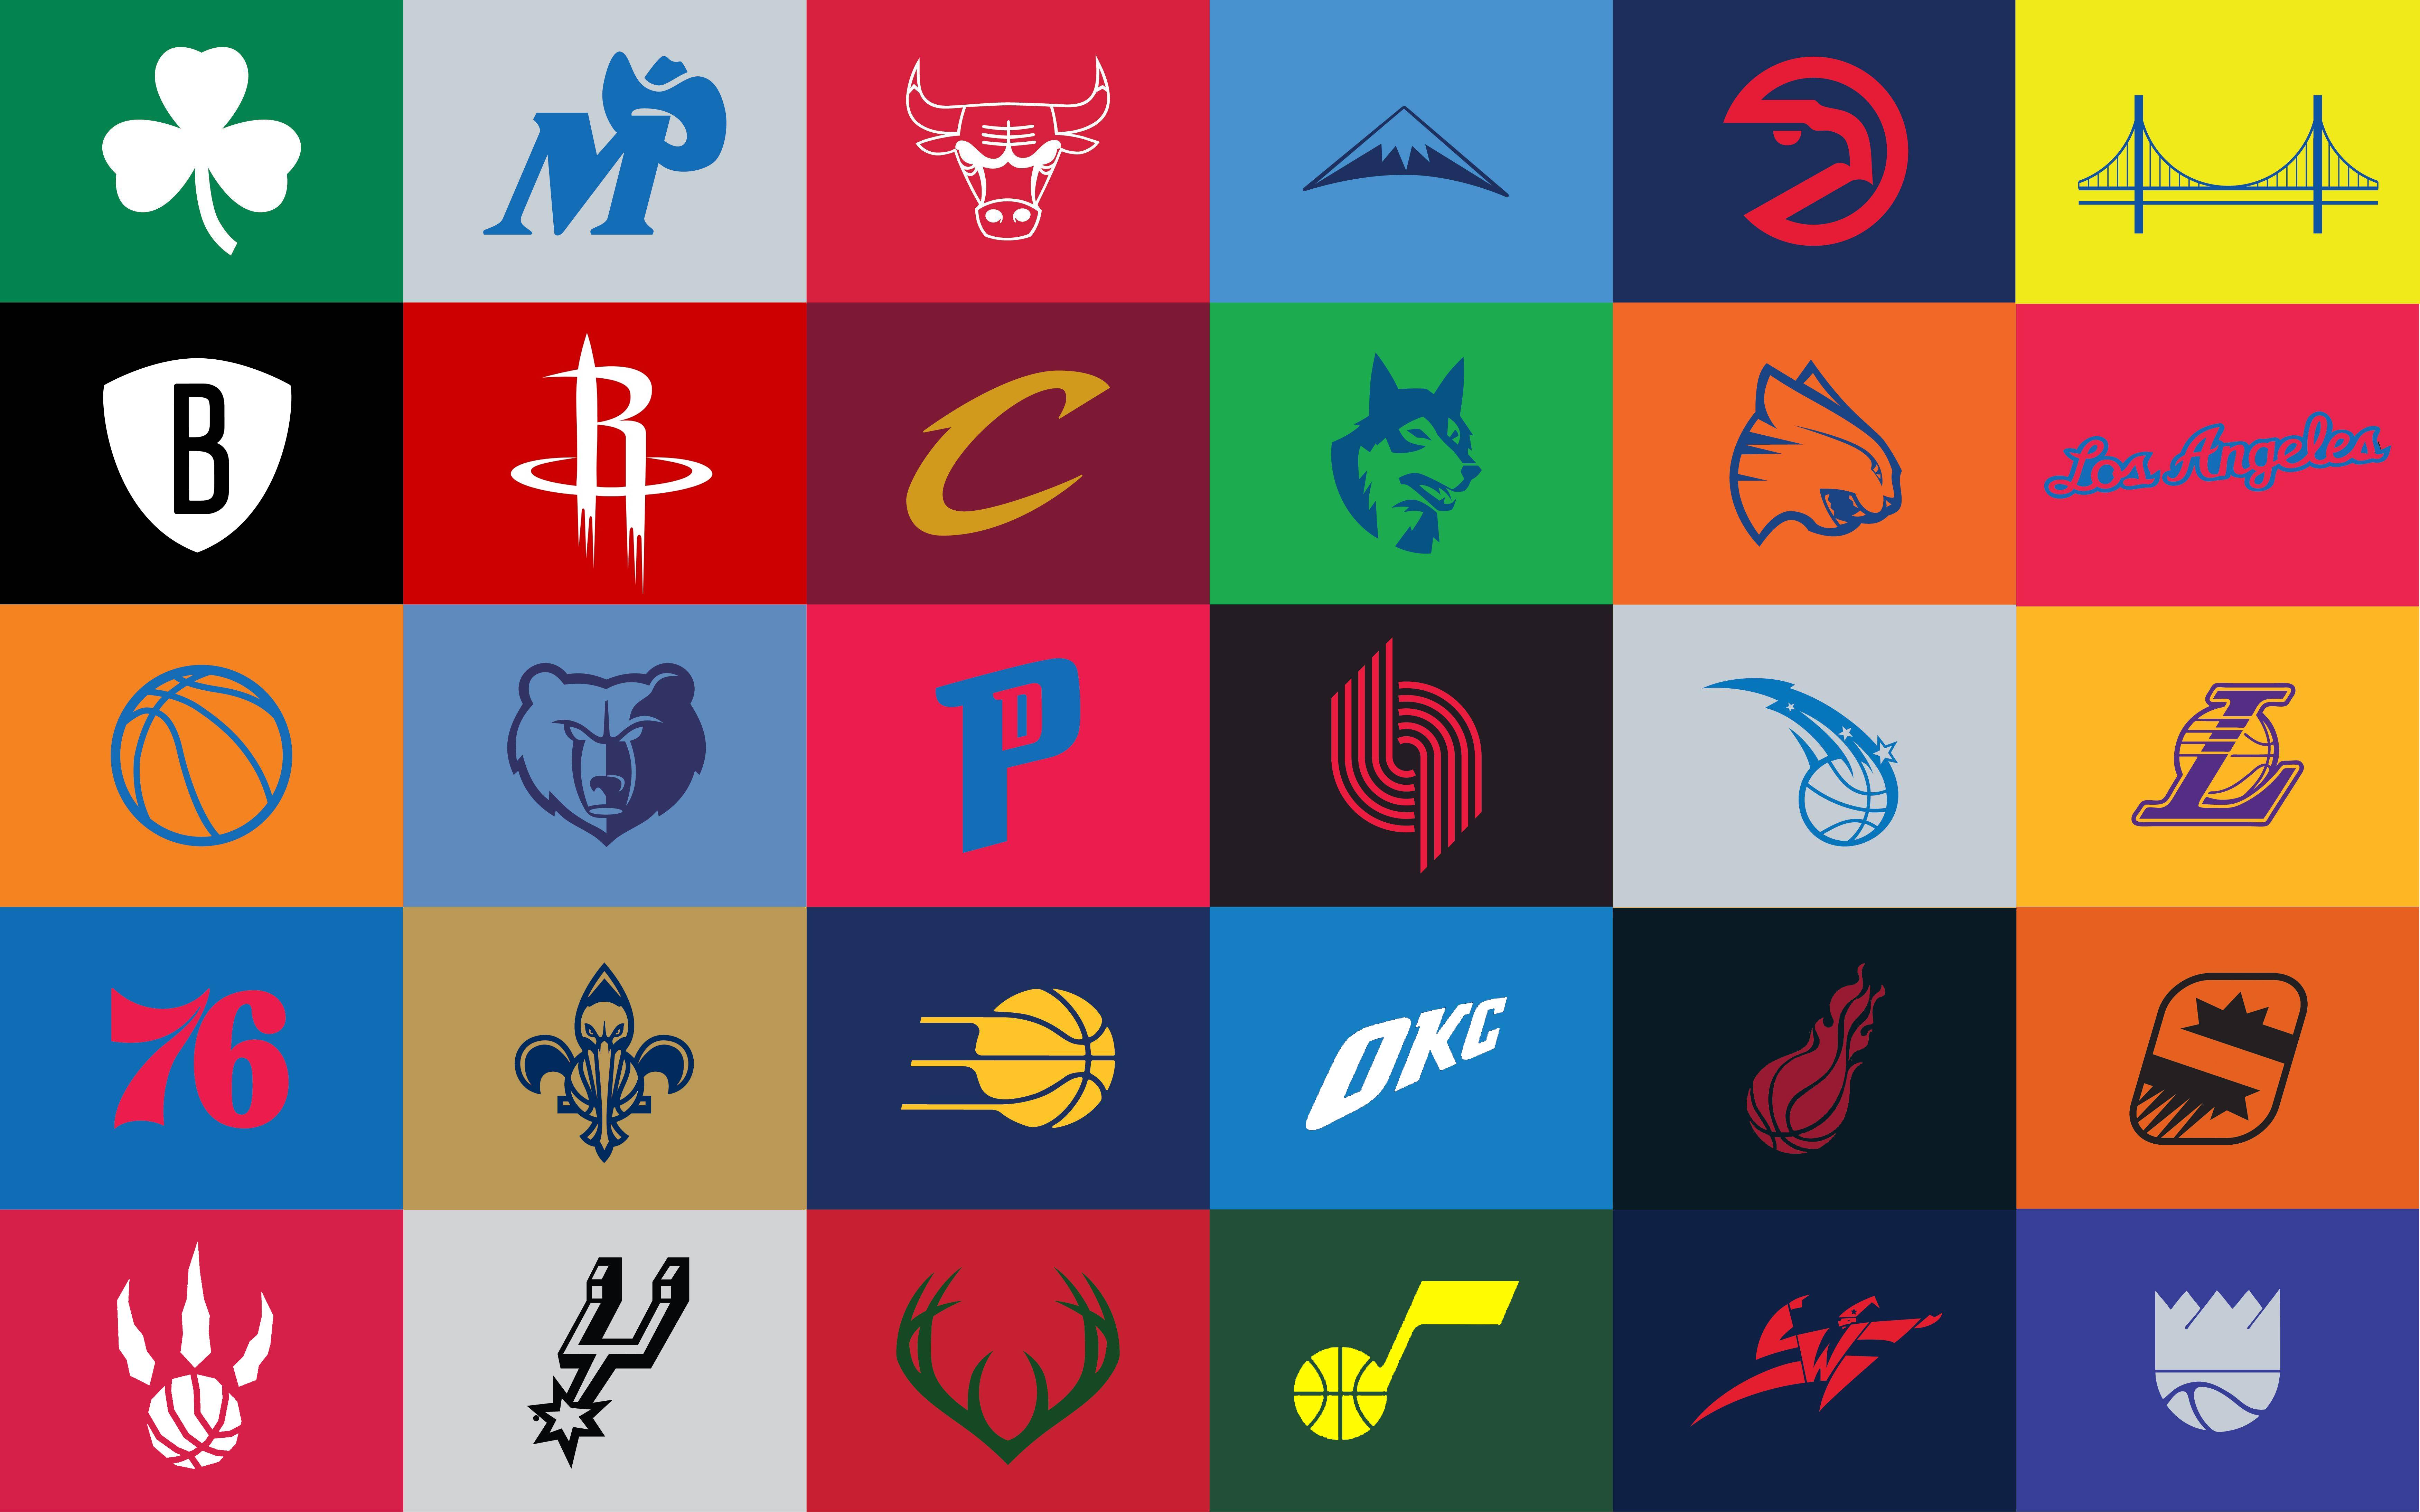 NBA Logos Wallpaper